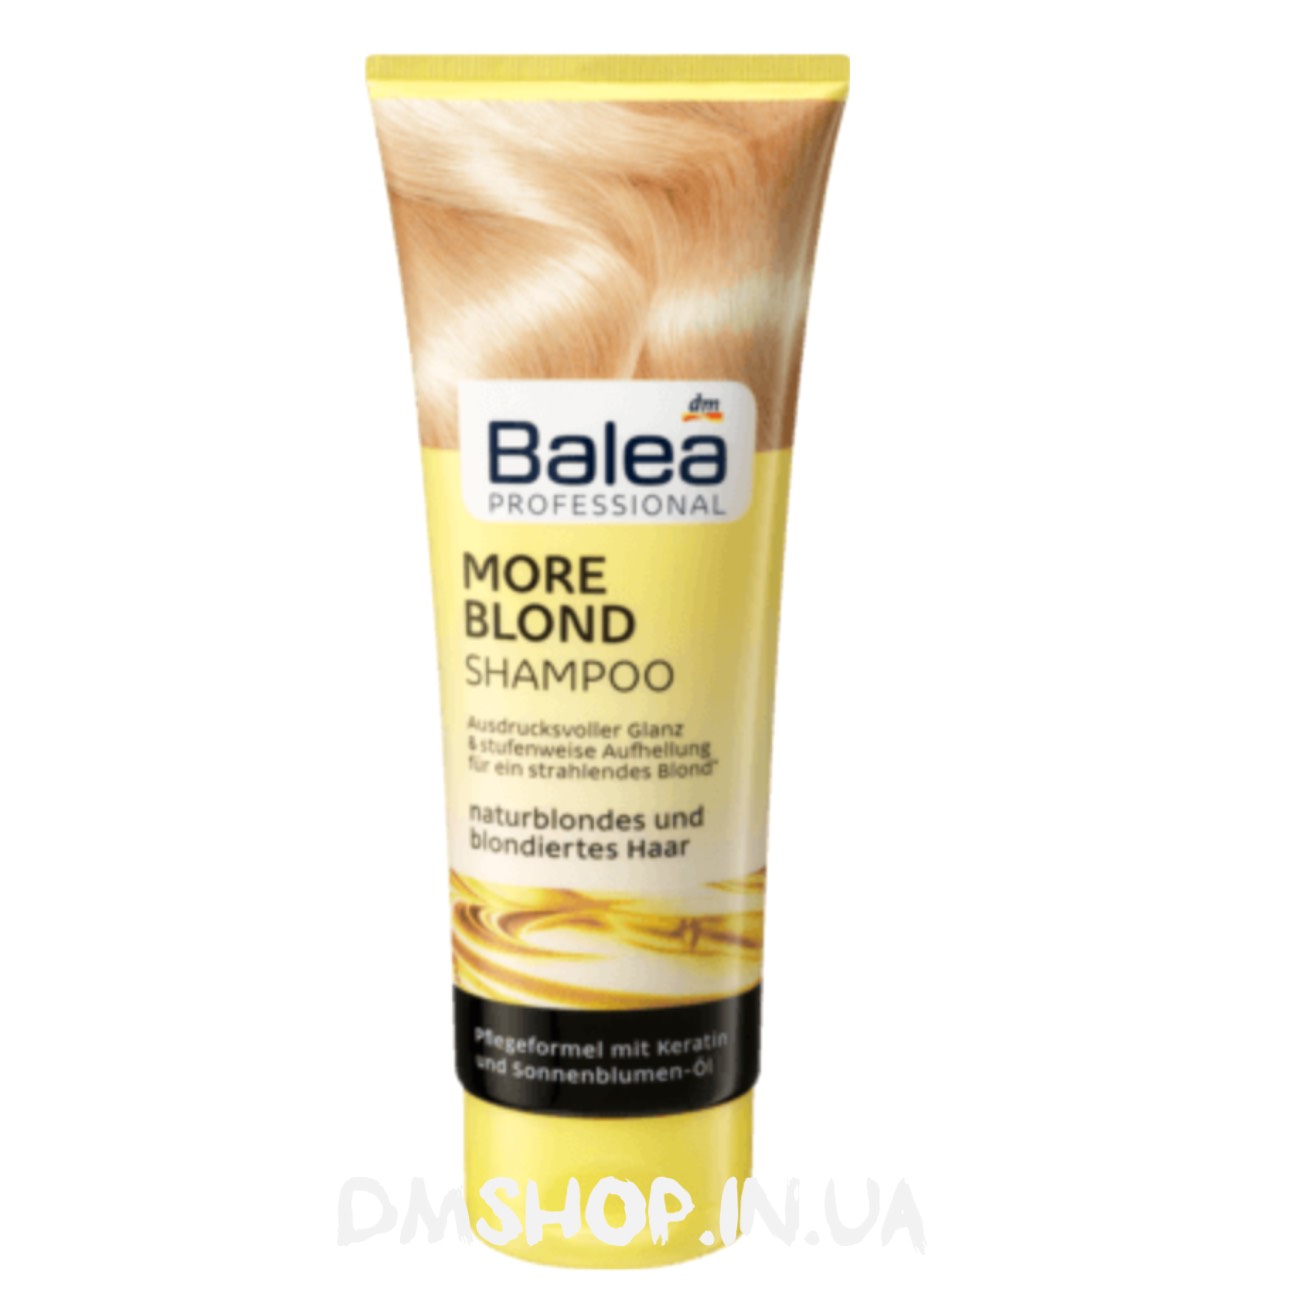 szampon gloss blond i blond shampoo balea